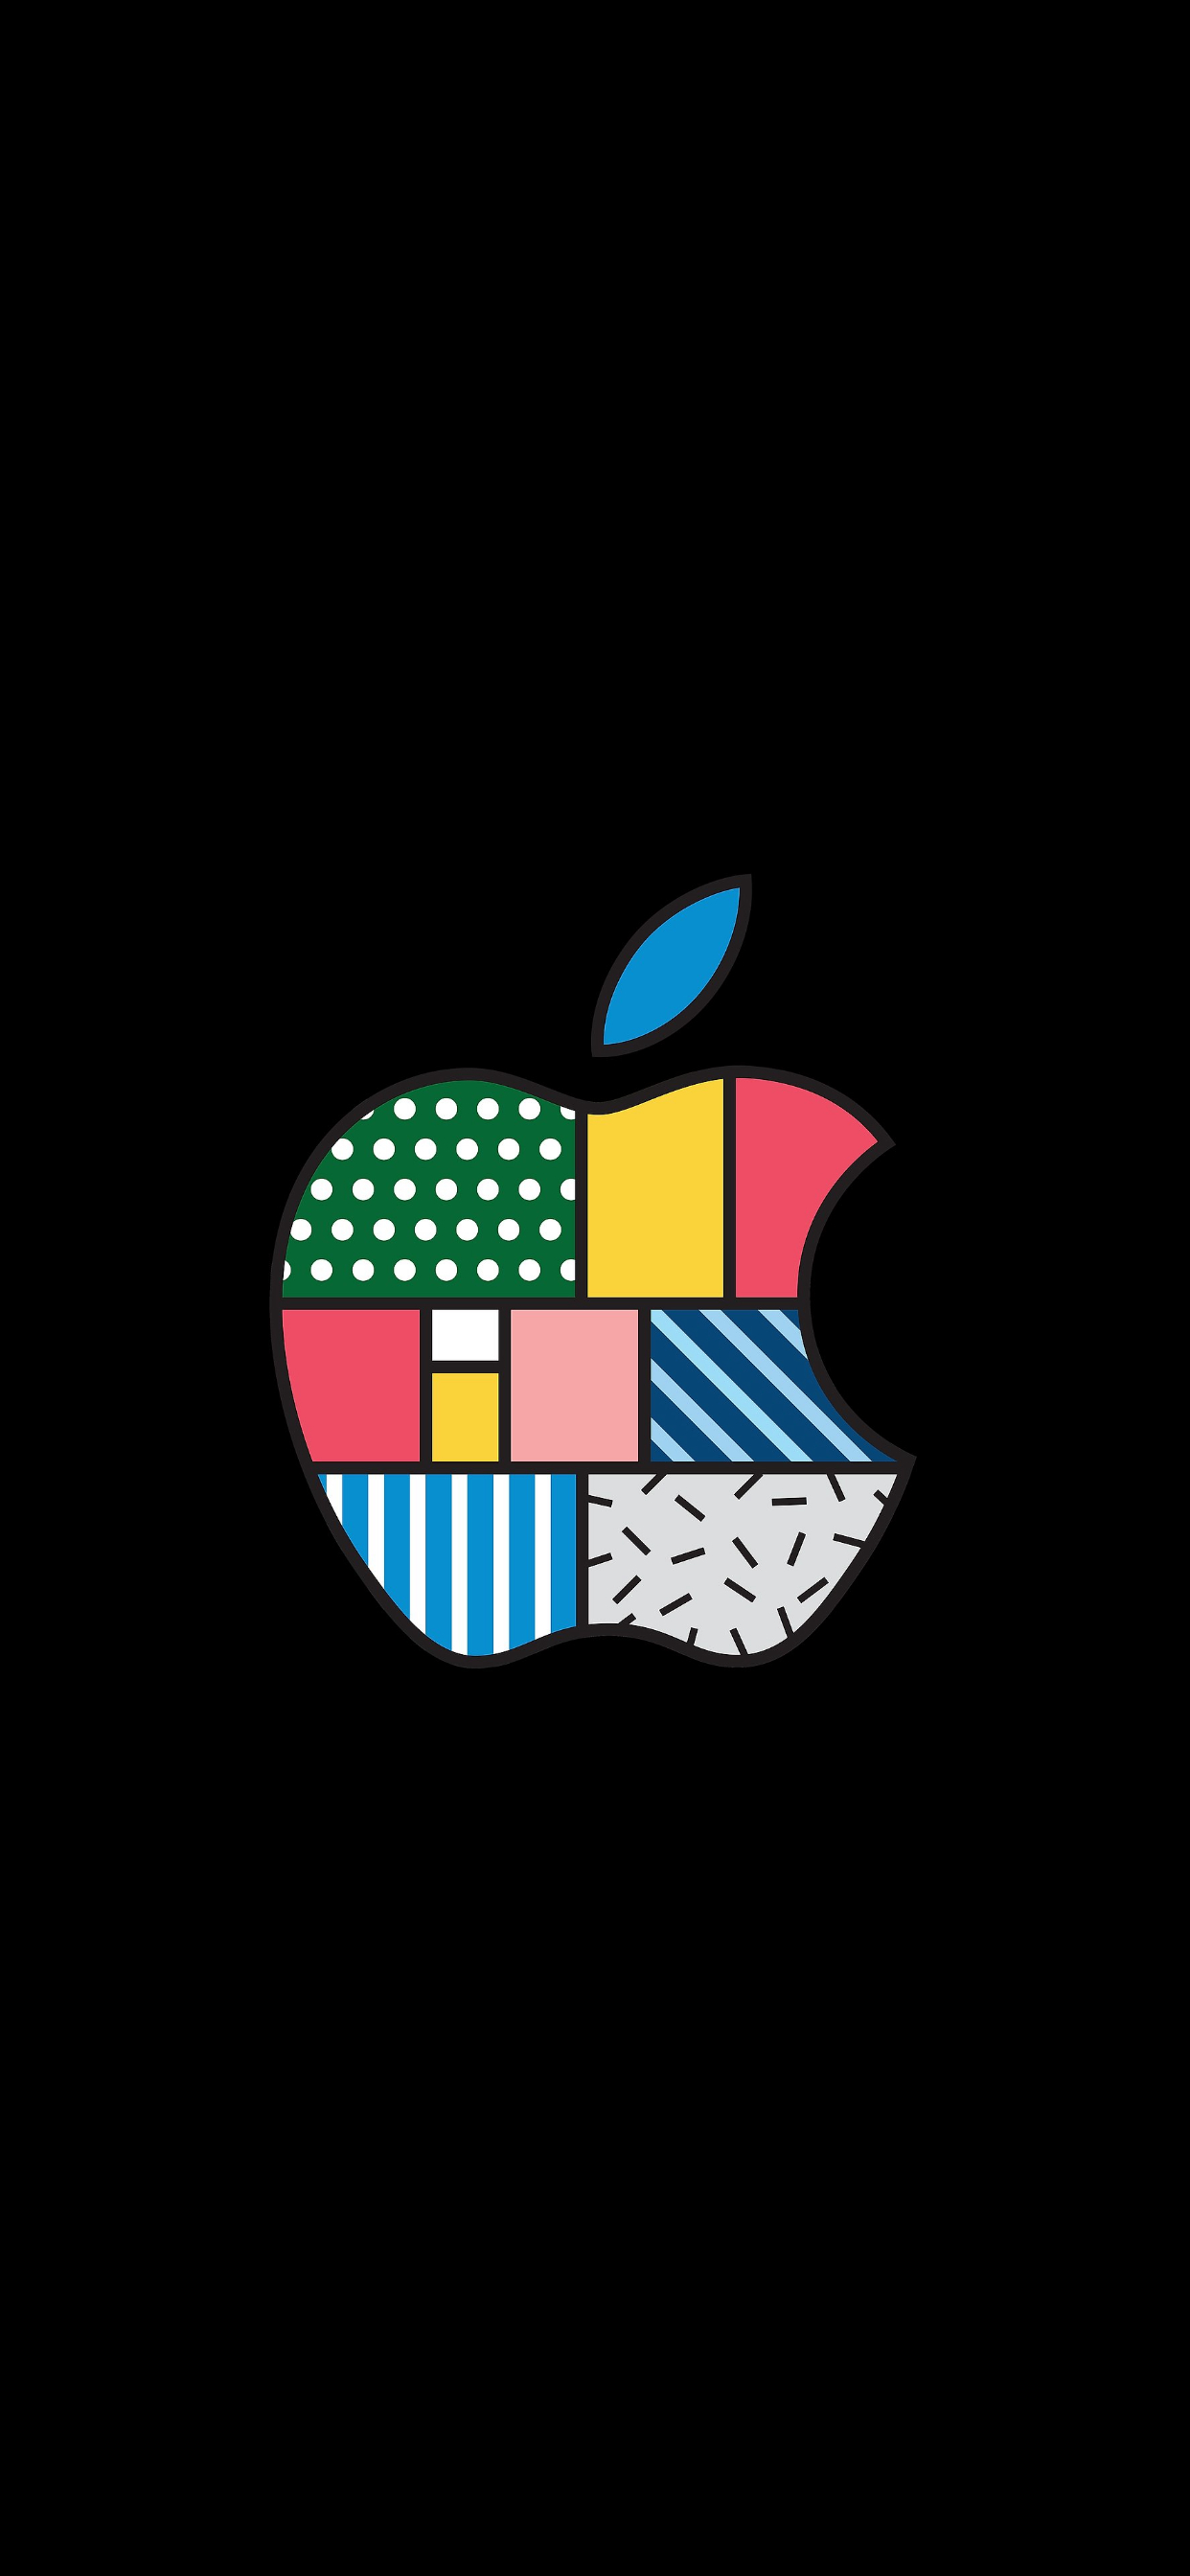 苹果logo壁纸超清竖屏图片